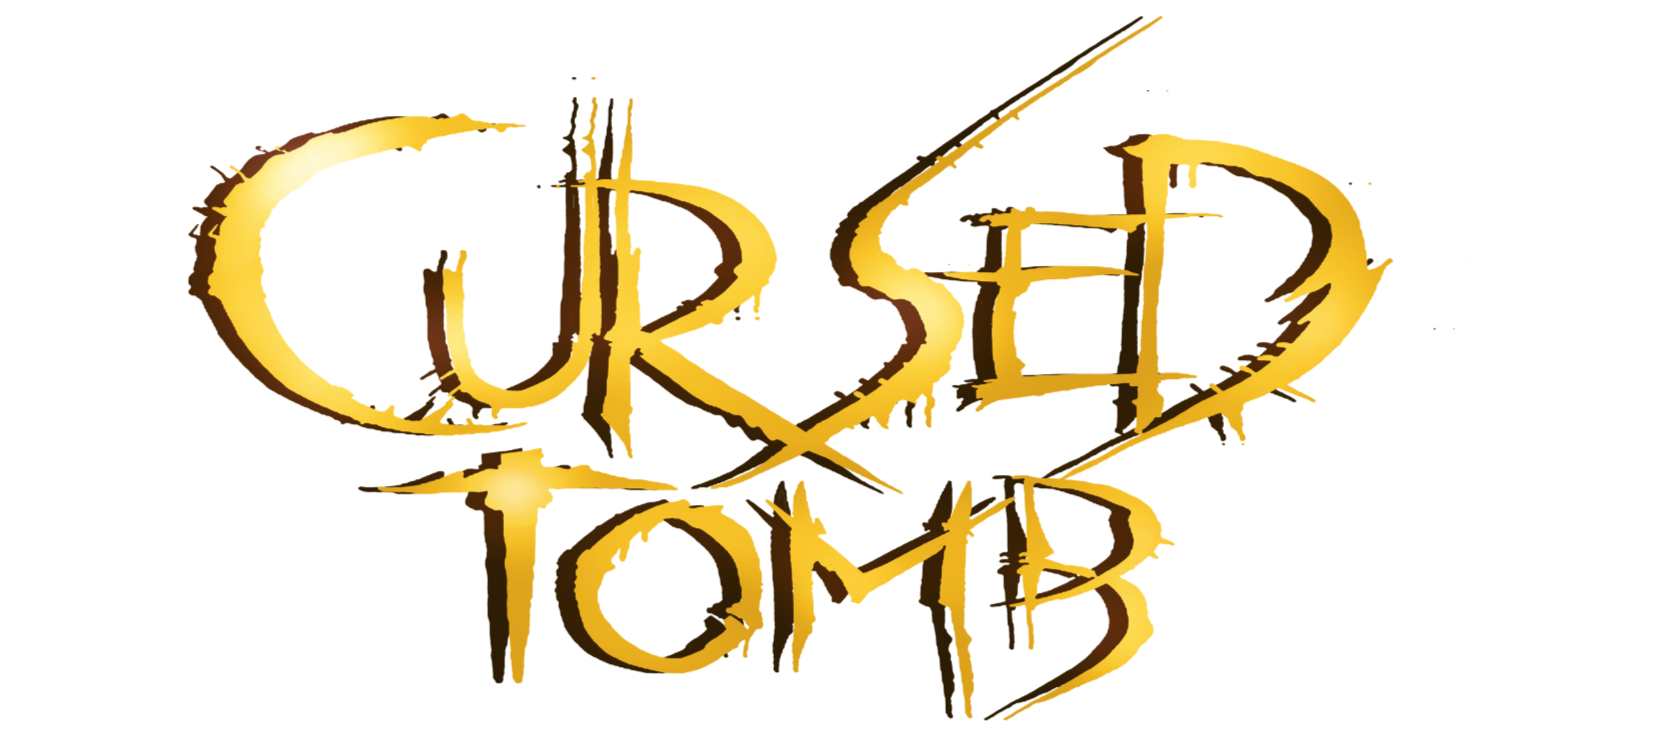 Cursed Tomb (C64)